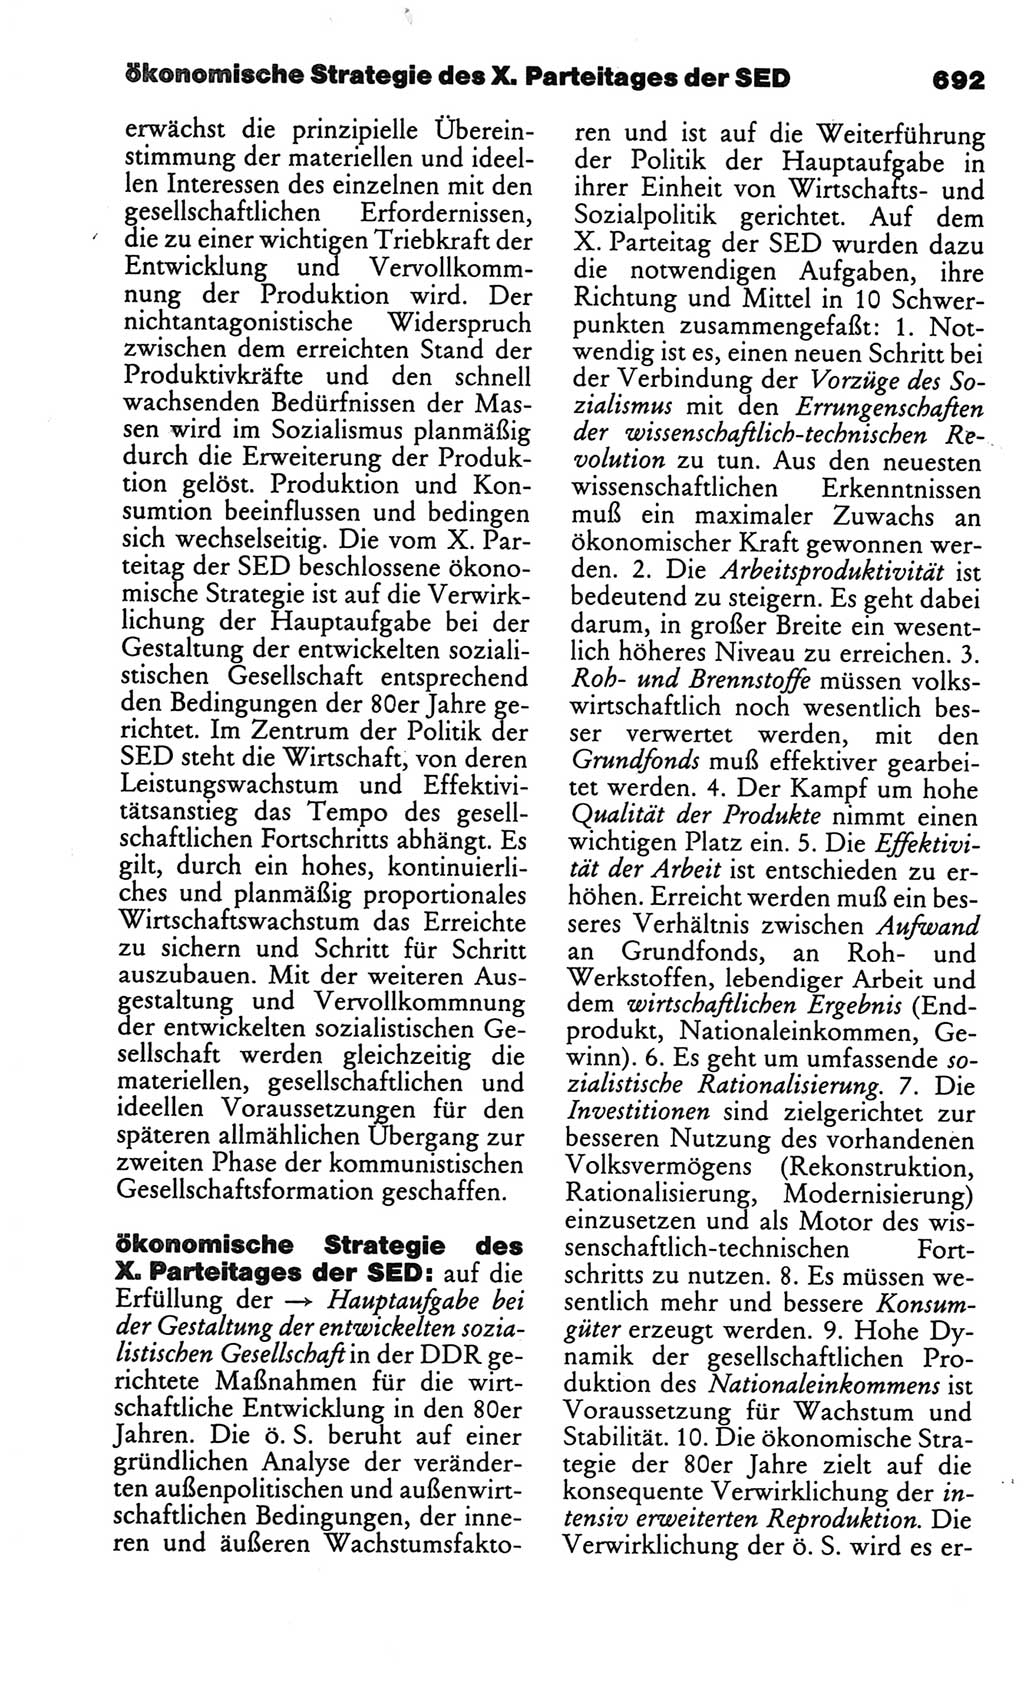 Kleines politisches Wörterbuch [Deutsche Demokratische Republik (DDR)] 1986, Seite 692 (Kl. pol. Wb. DDR 1986, S. 692)